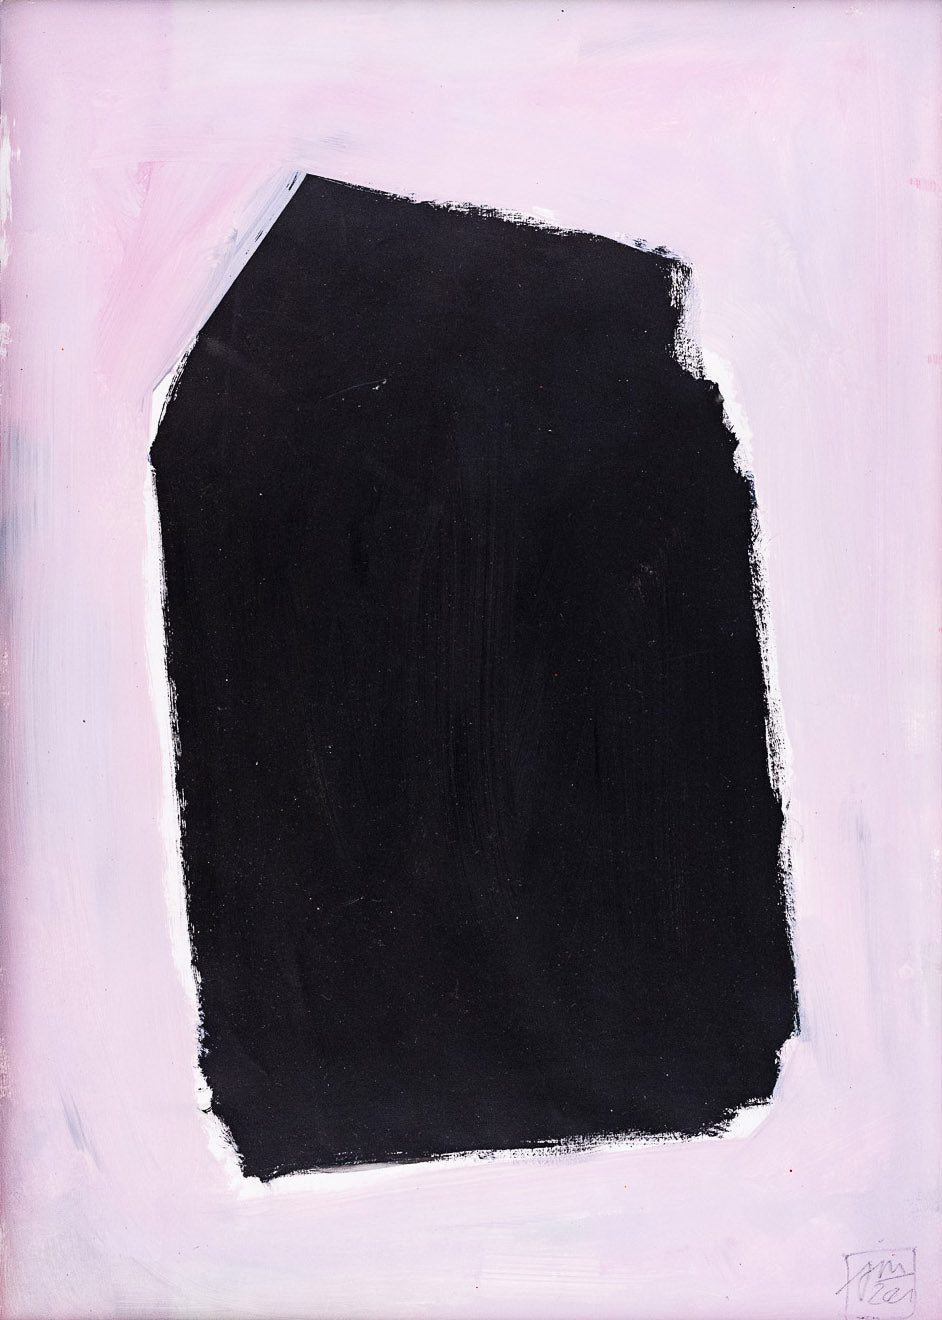 Gemälde mit schwarzer Fläche auf grauem Hintergrund von der Schweizer Malerin Janet Mueller. Online erhältlich